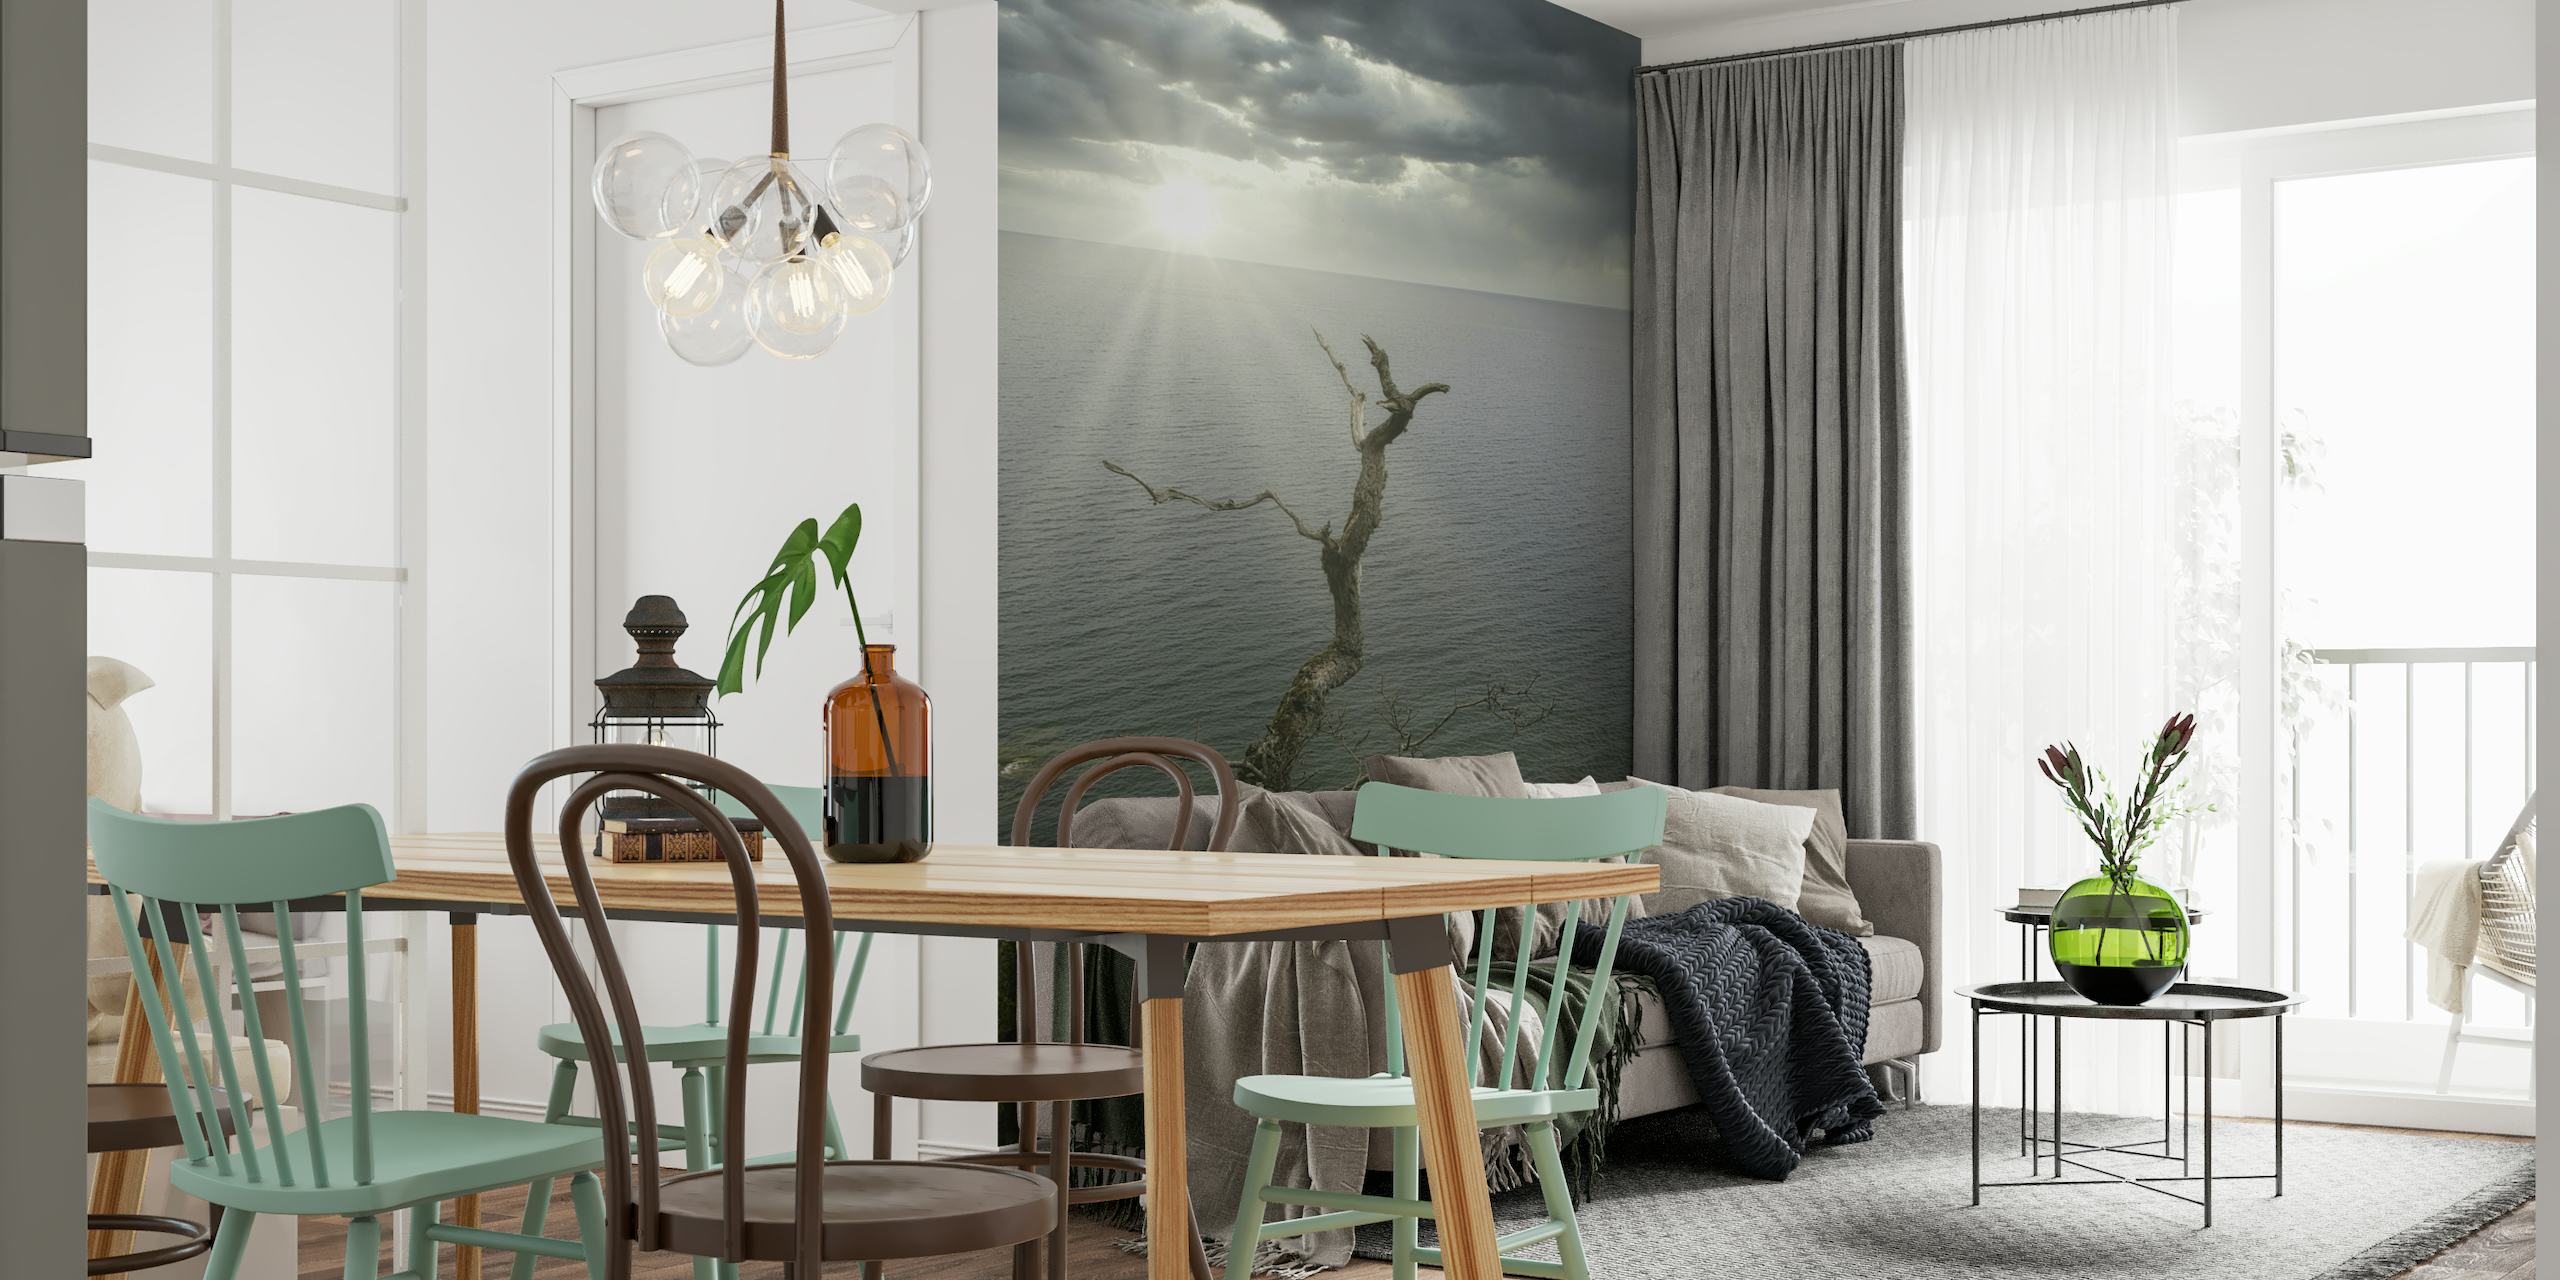 Bornholm Baltic Sea Impression wallpaper